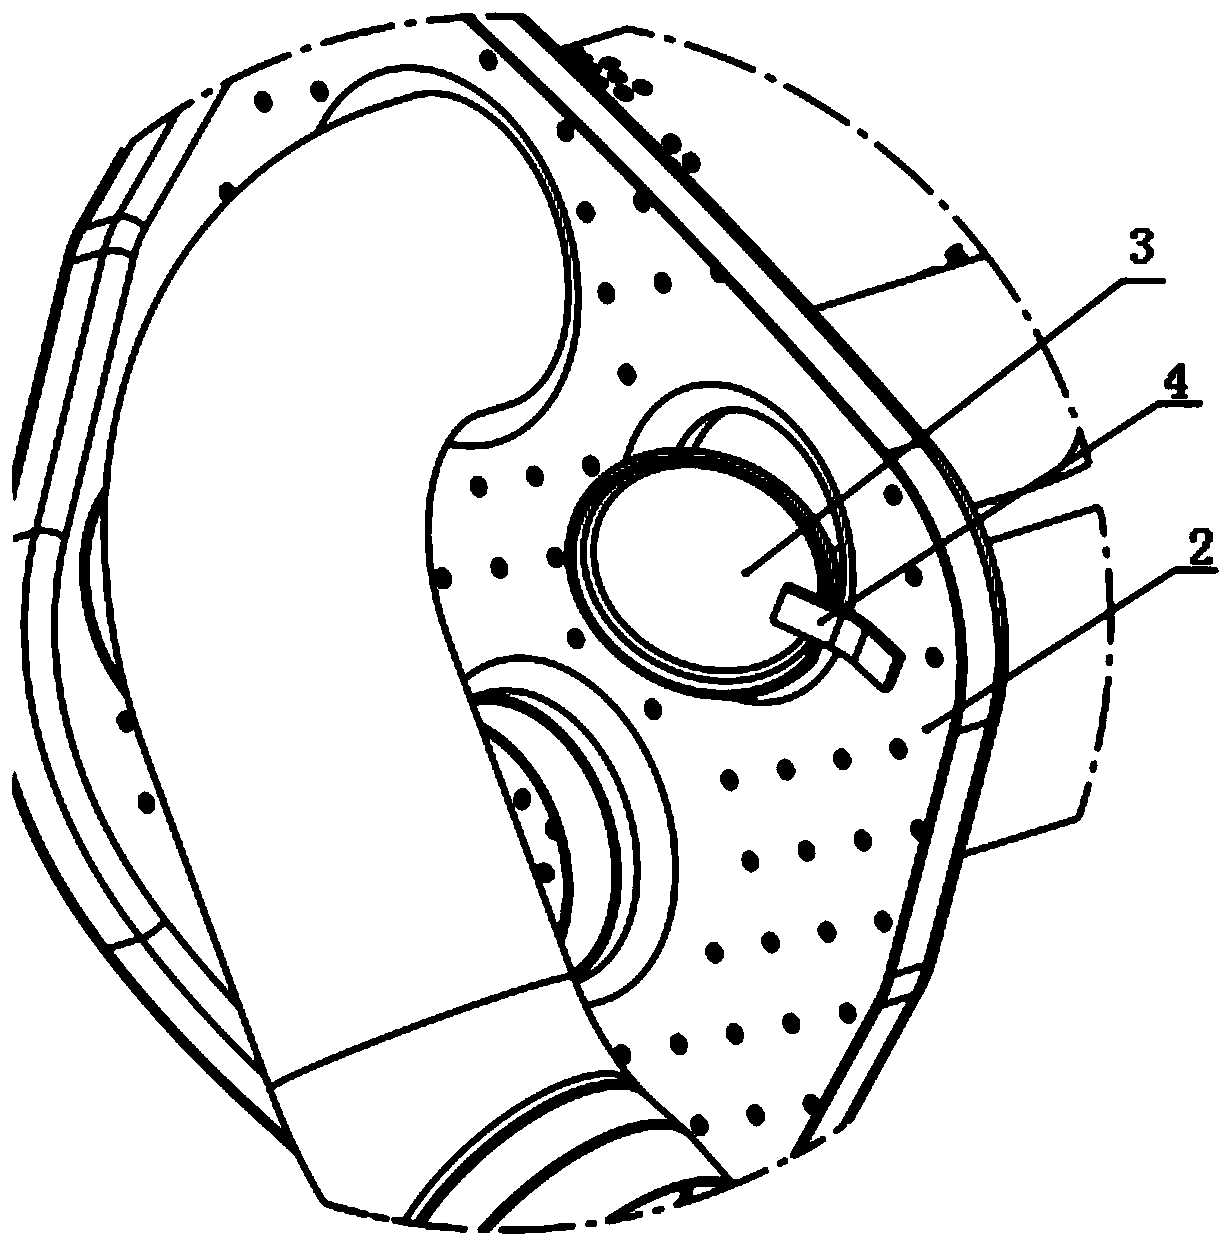 A muffler pneumatic valve assembly